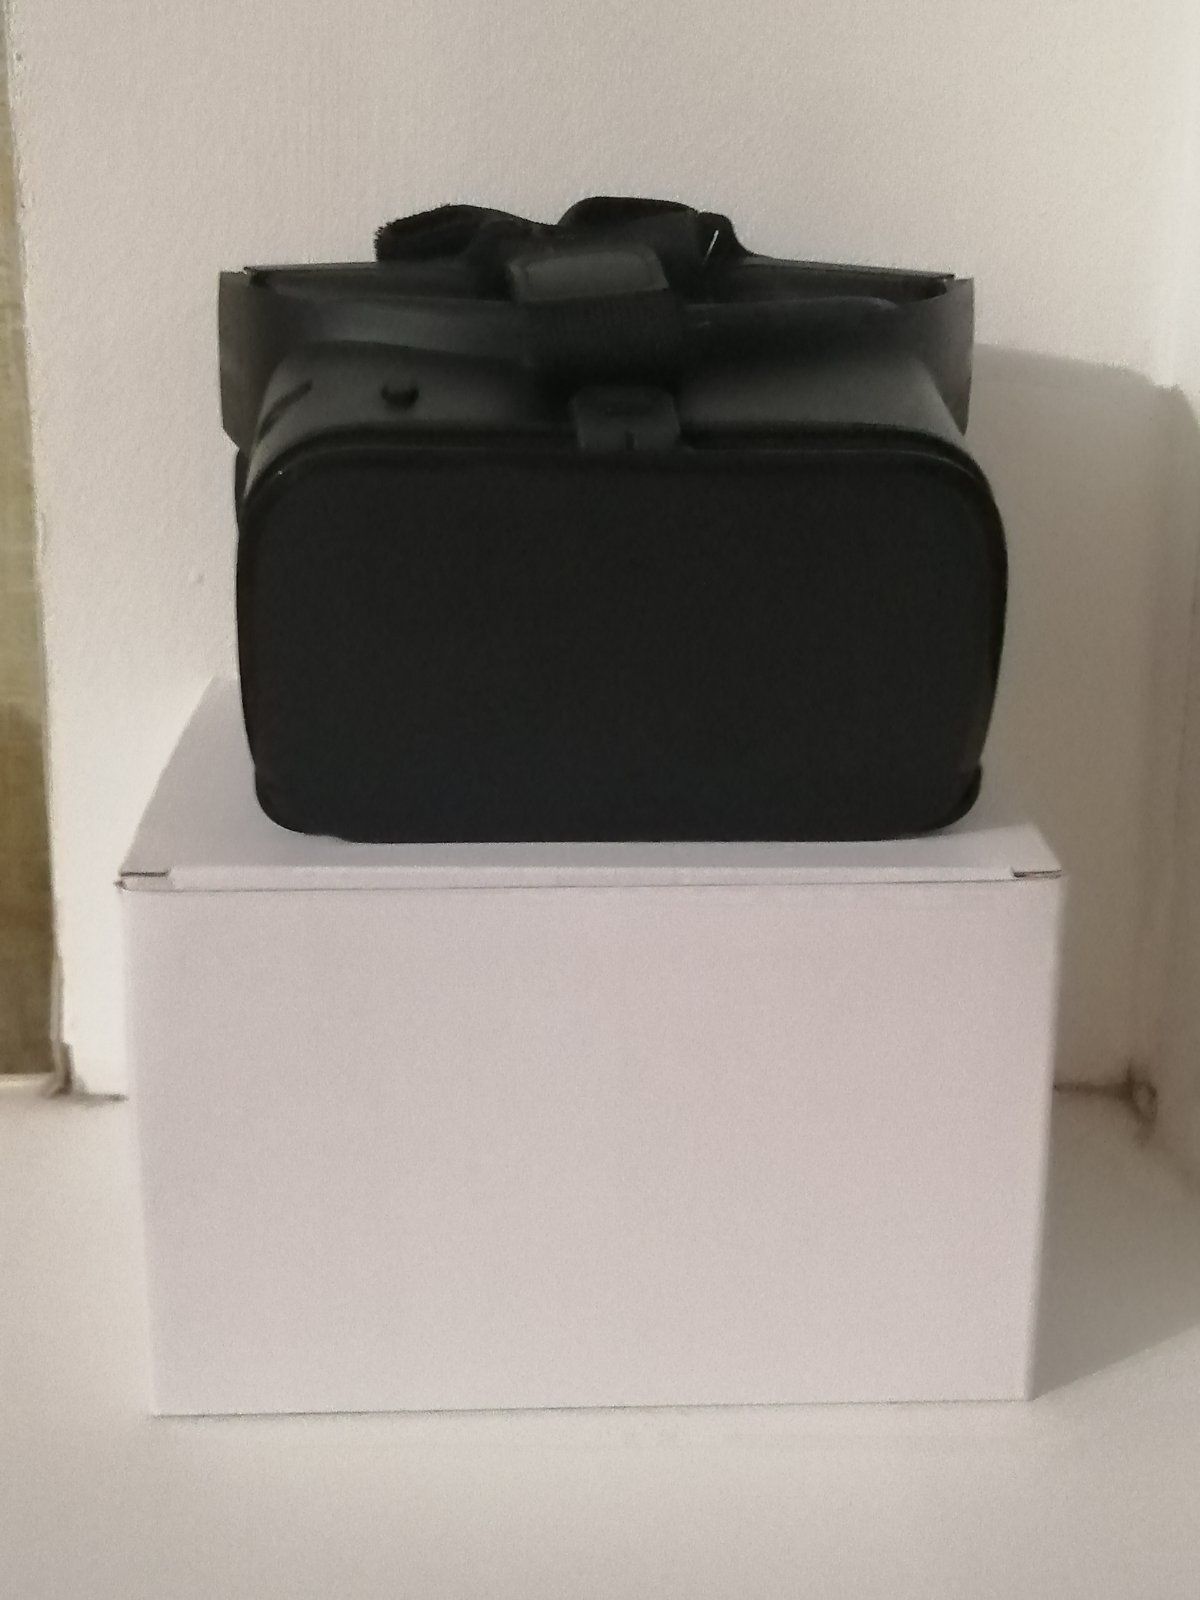 Продам VR Z6  по лояльно цене новые.